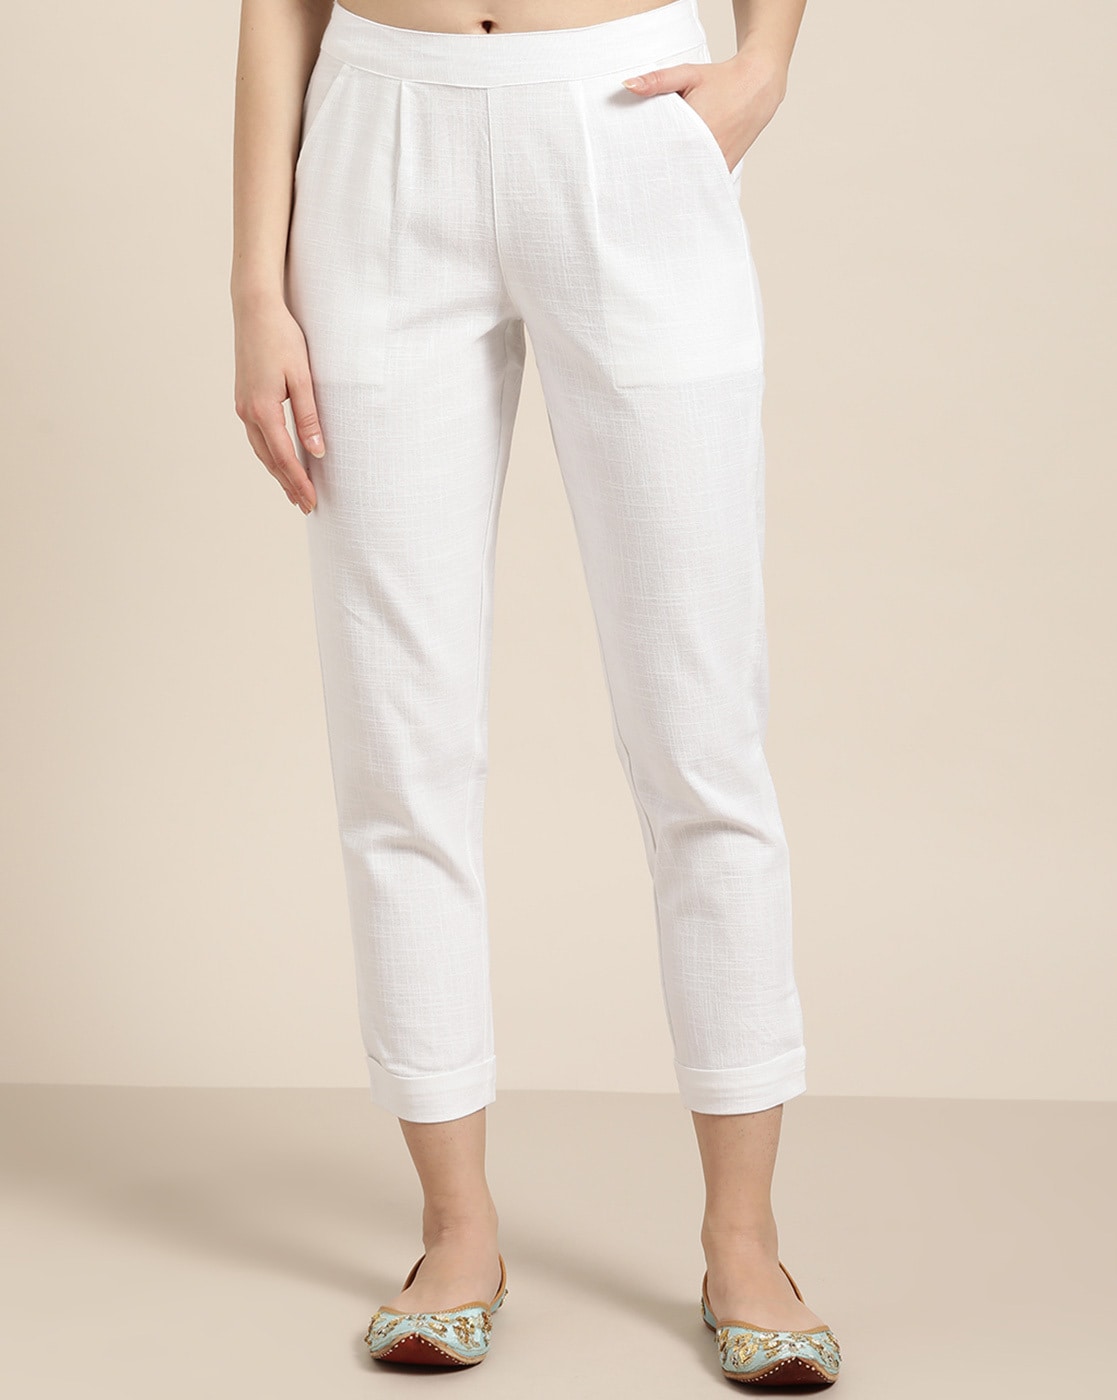 Women's White Pants | Nordstrom Rack